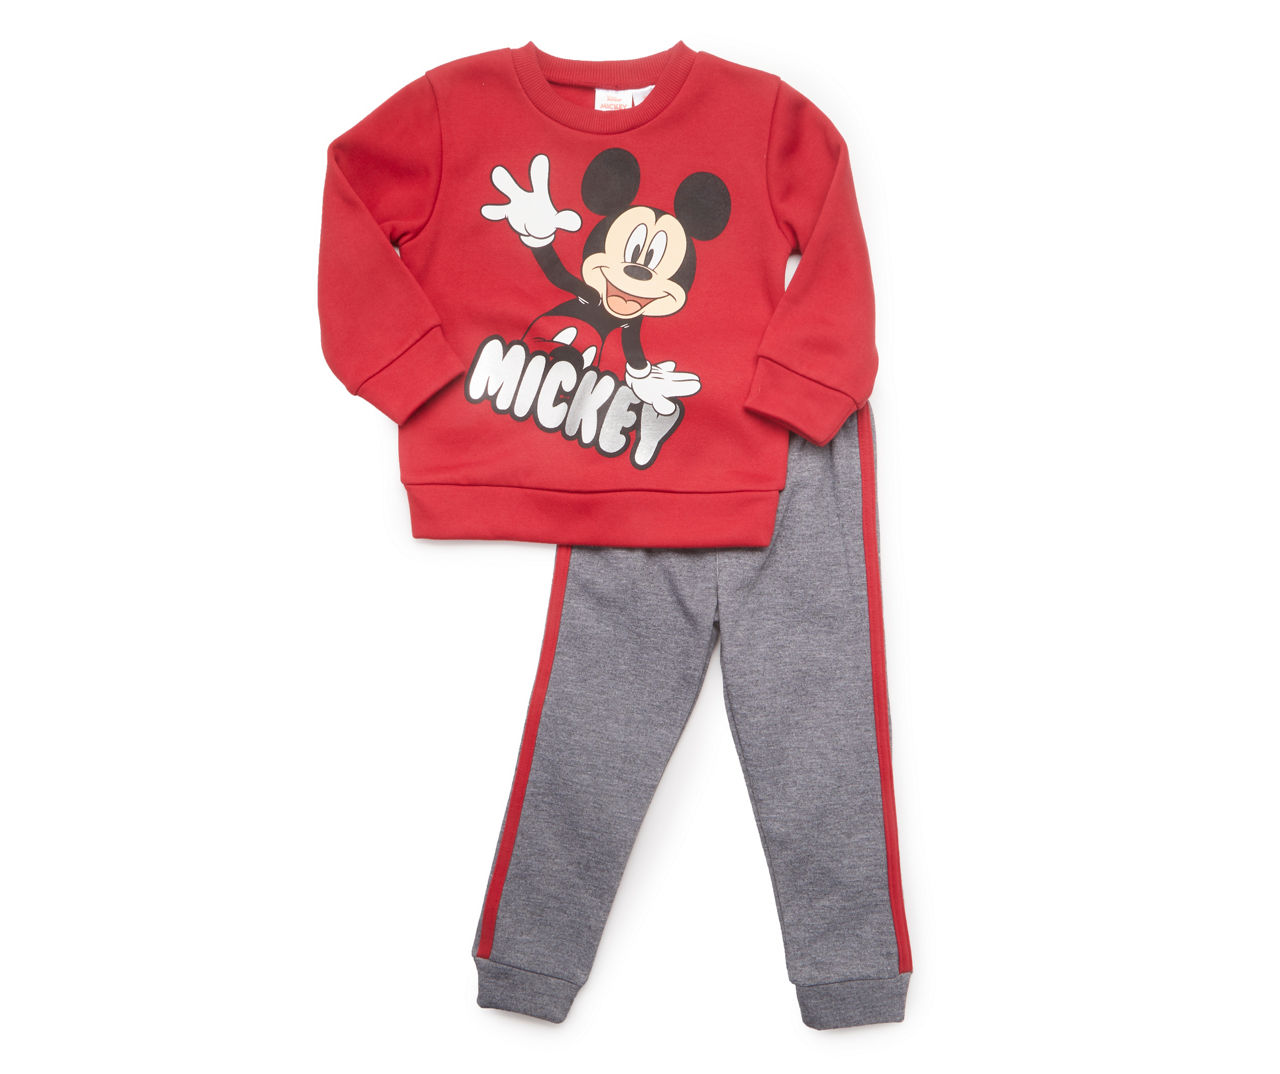 Toddler Size 2T "Mickey" Red Fleece Sweatshirt & Gray Side-Stripe Sweatpants